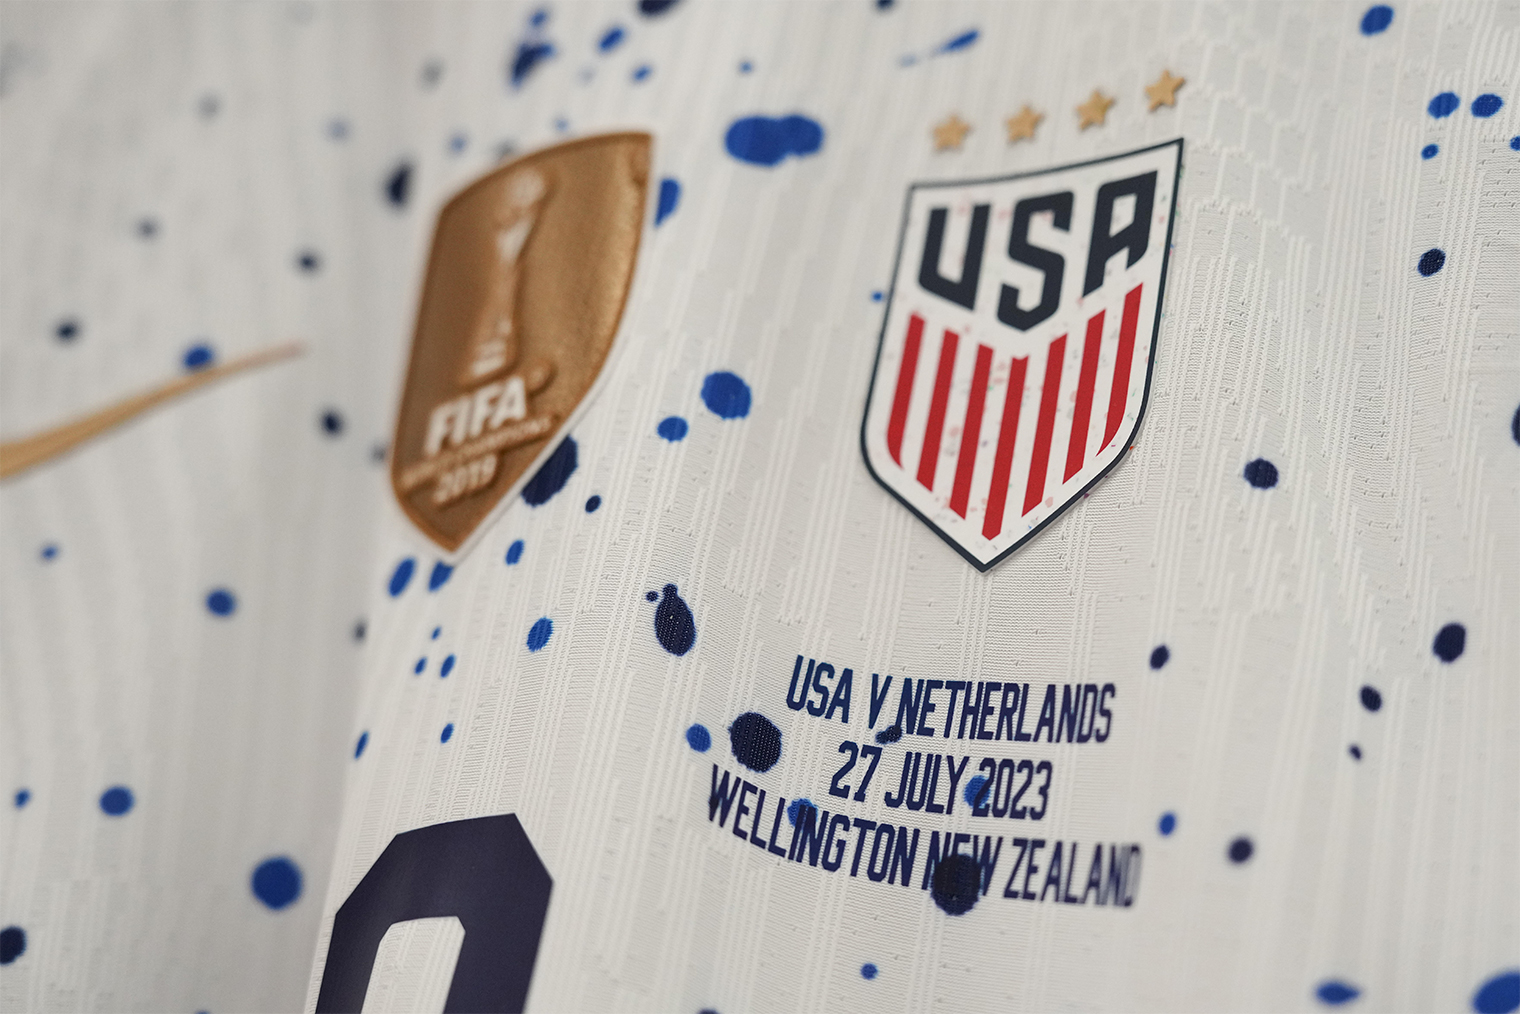 Помимо эмблемы команды, фамилии и номера на форме обычно размещают логотипы спонсора, турнира, а для больших матчей — еще и памятные надписи. Фото: Brad Smith / USSF / Getty Images